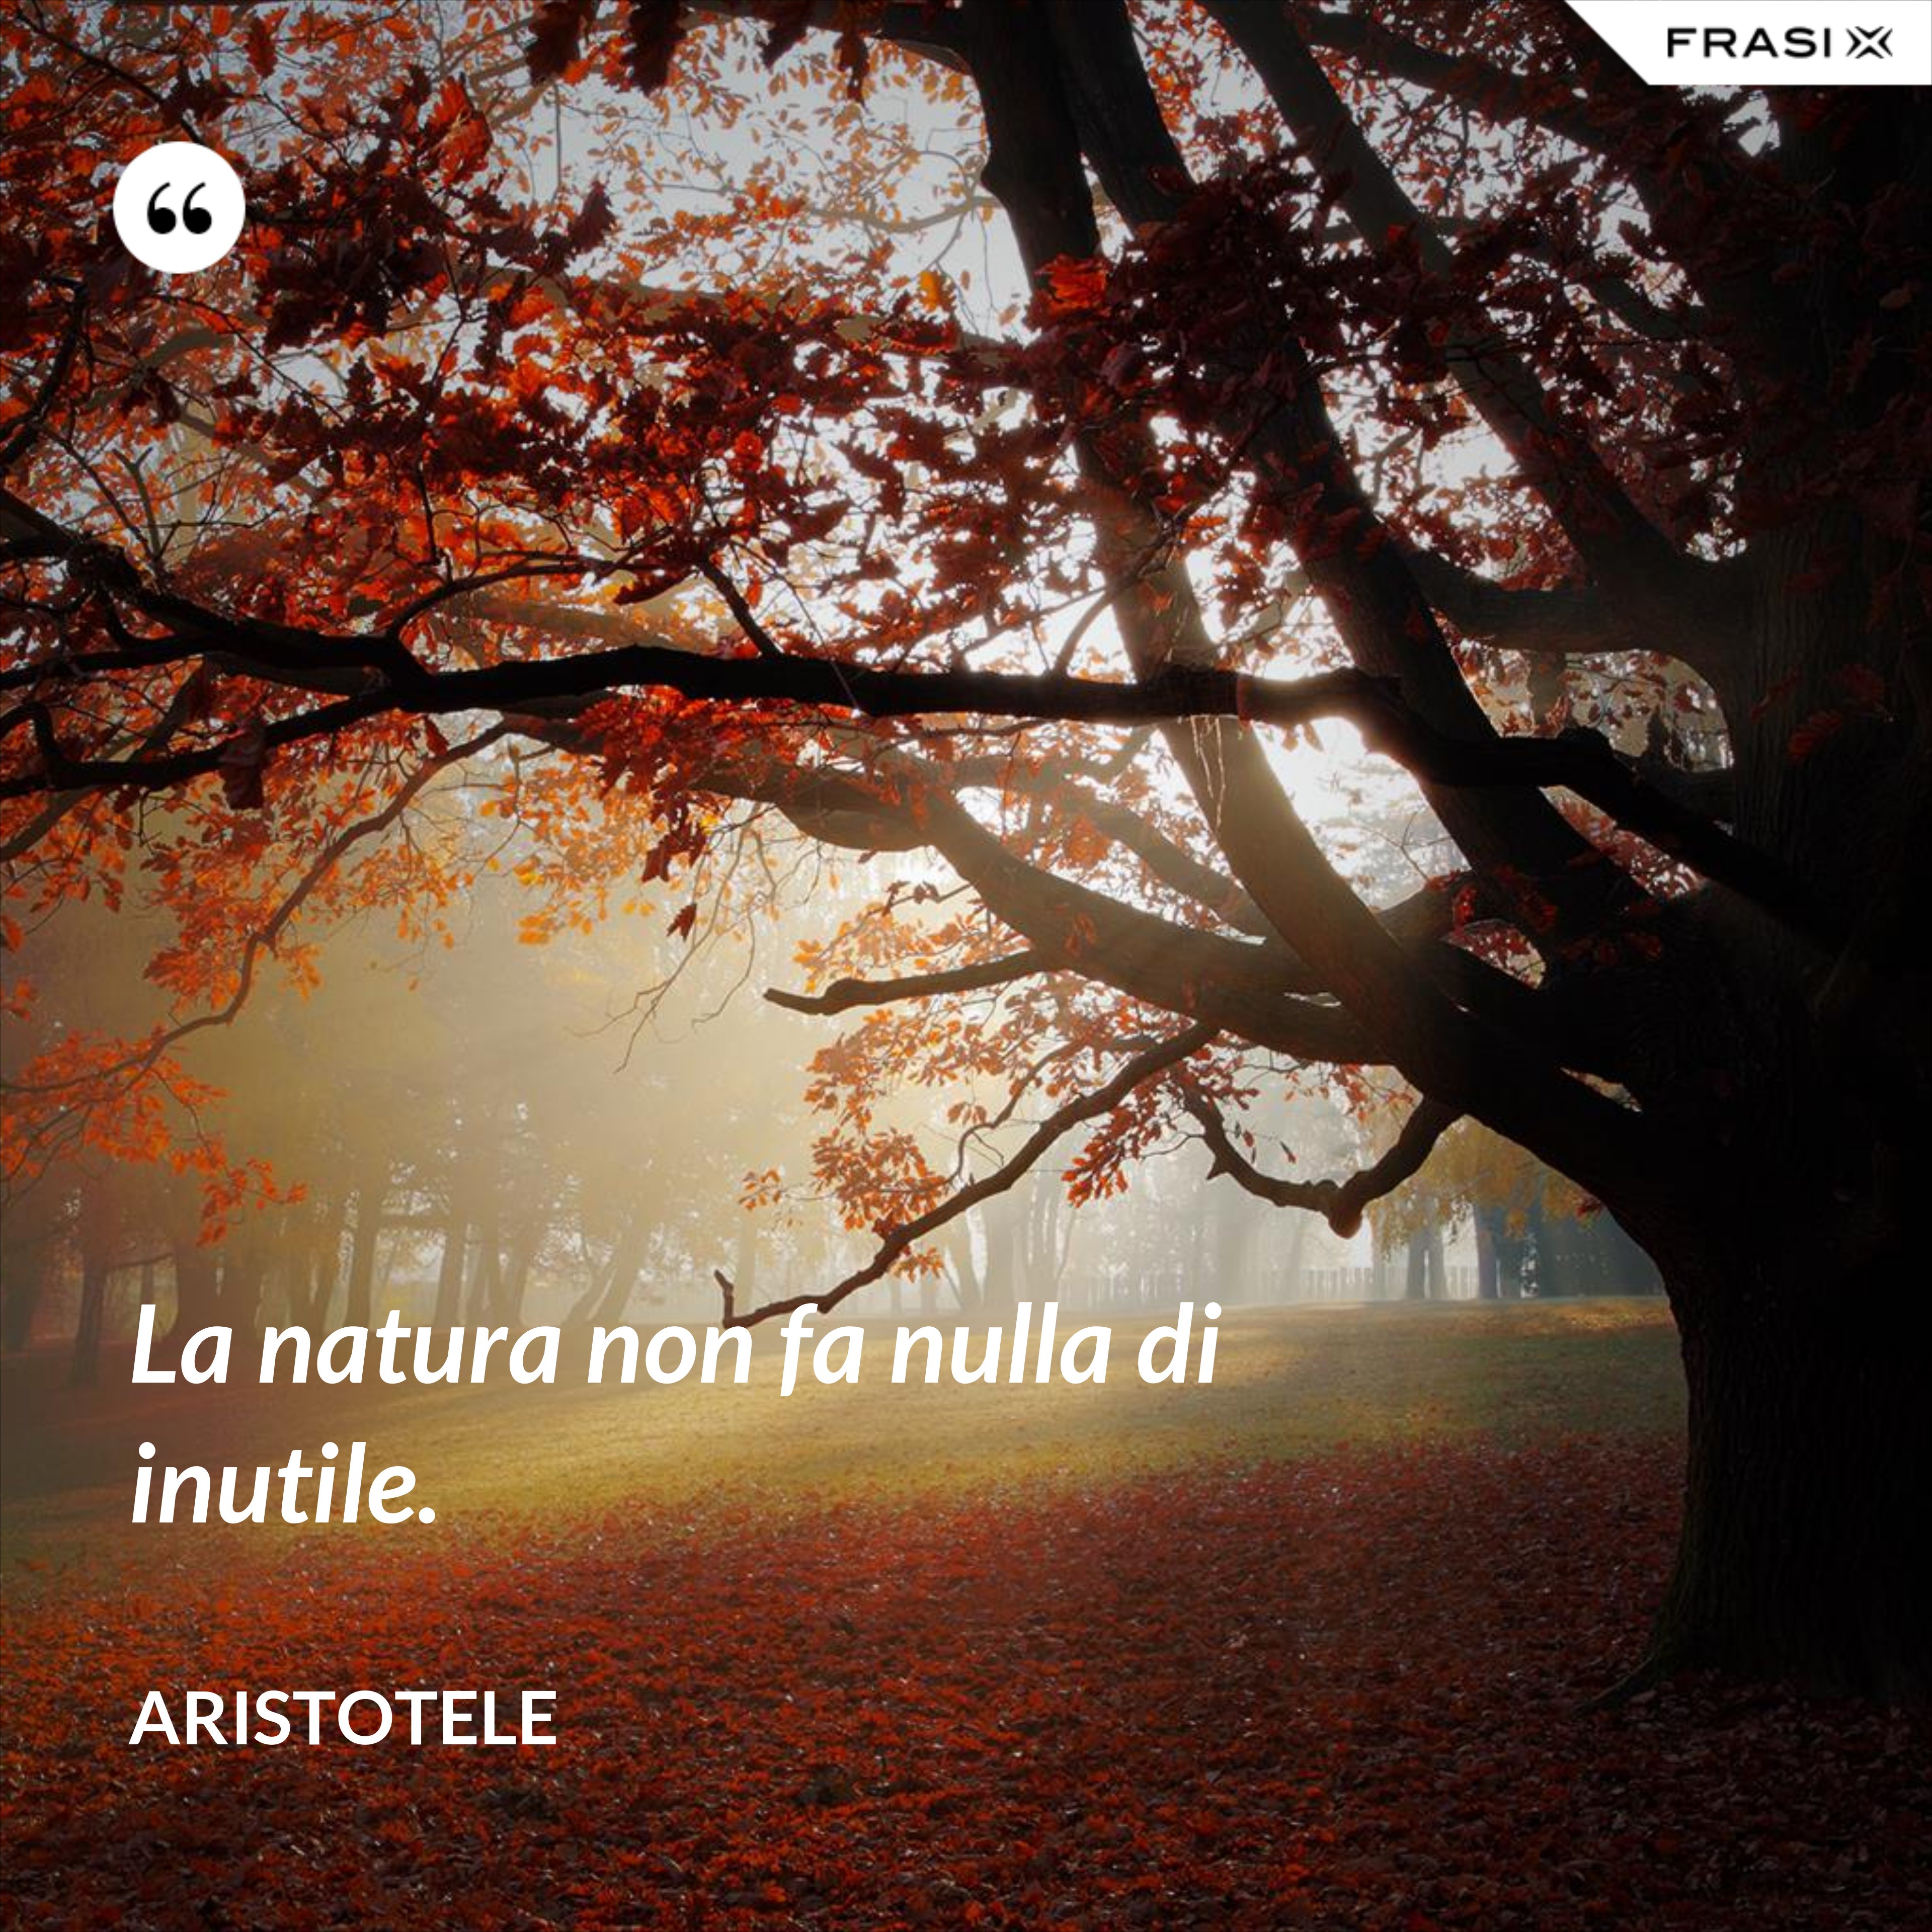 La natura non fa nulla di inutile. - Aristotele